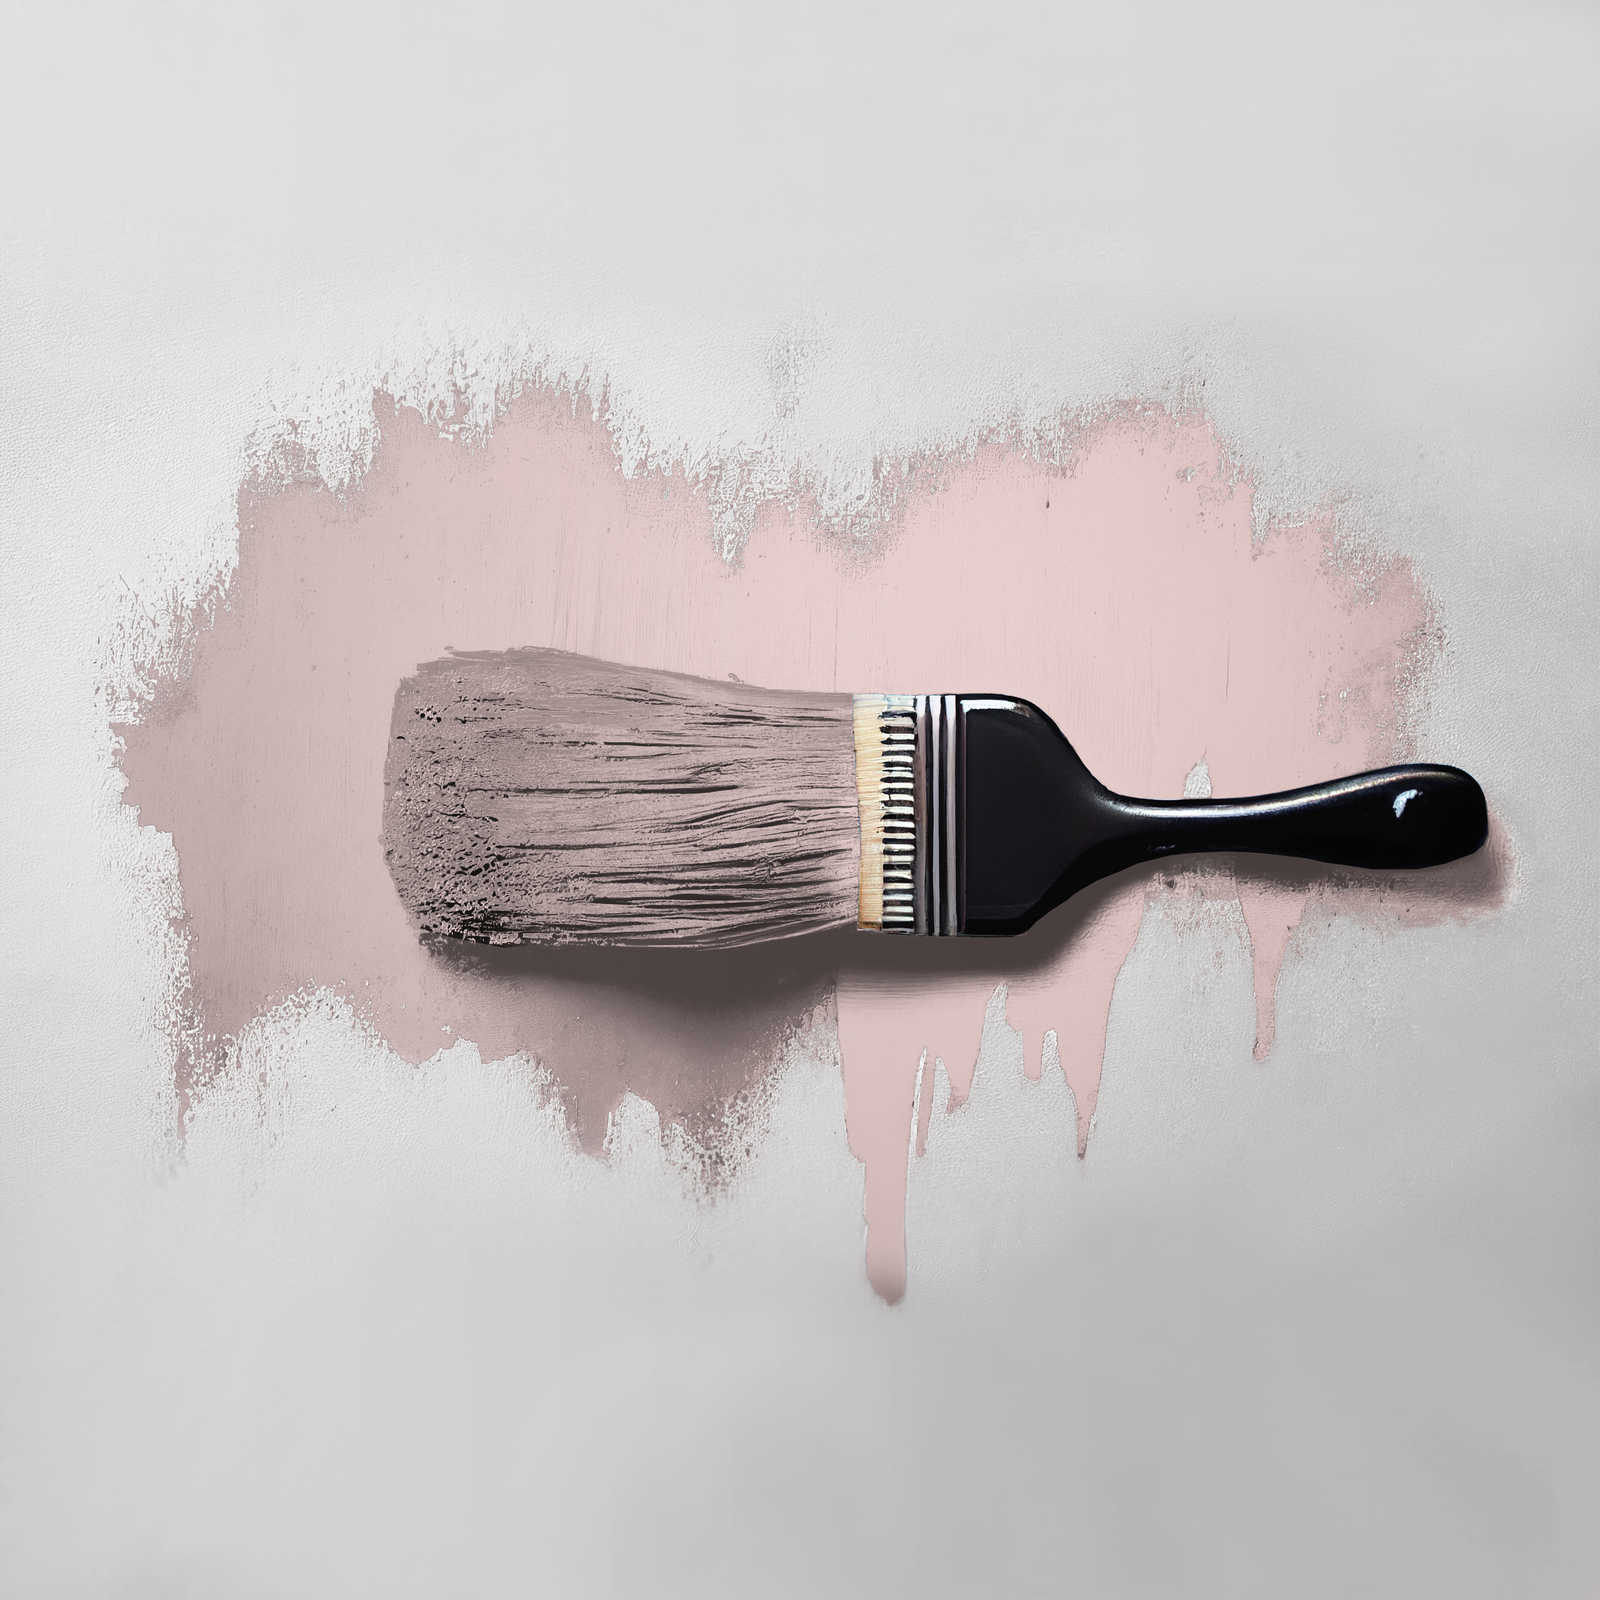             Pittura murale TCK7008 »Cute Cupcake« in rosa delicato – 5,0 litri
        